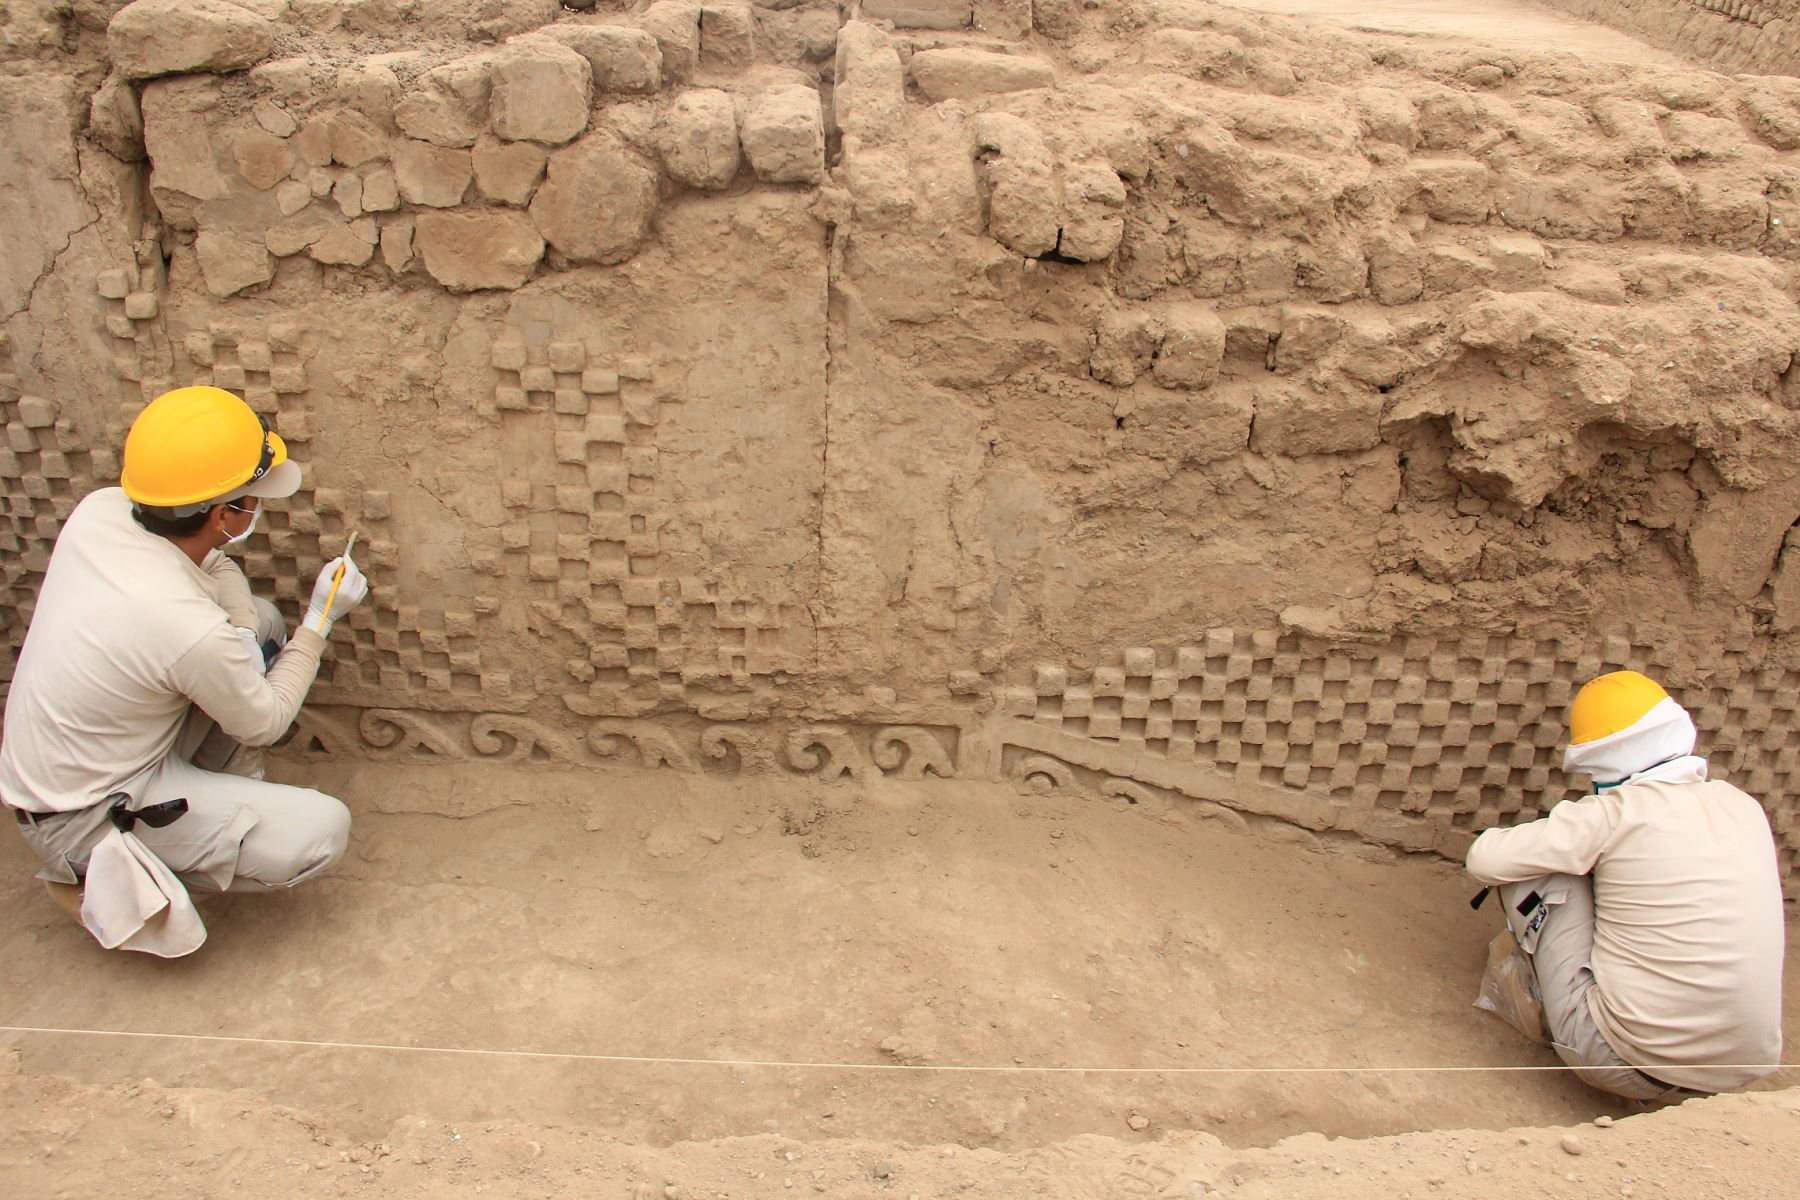 Hallan relieves de olas y escaques en muros perimetrales de Utzh An, en la ciudadela Chan Chan. ANDINA/Luis Puell